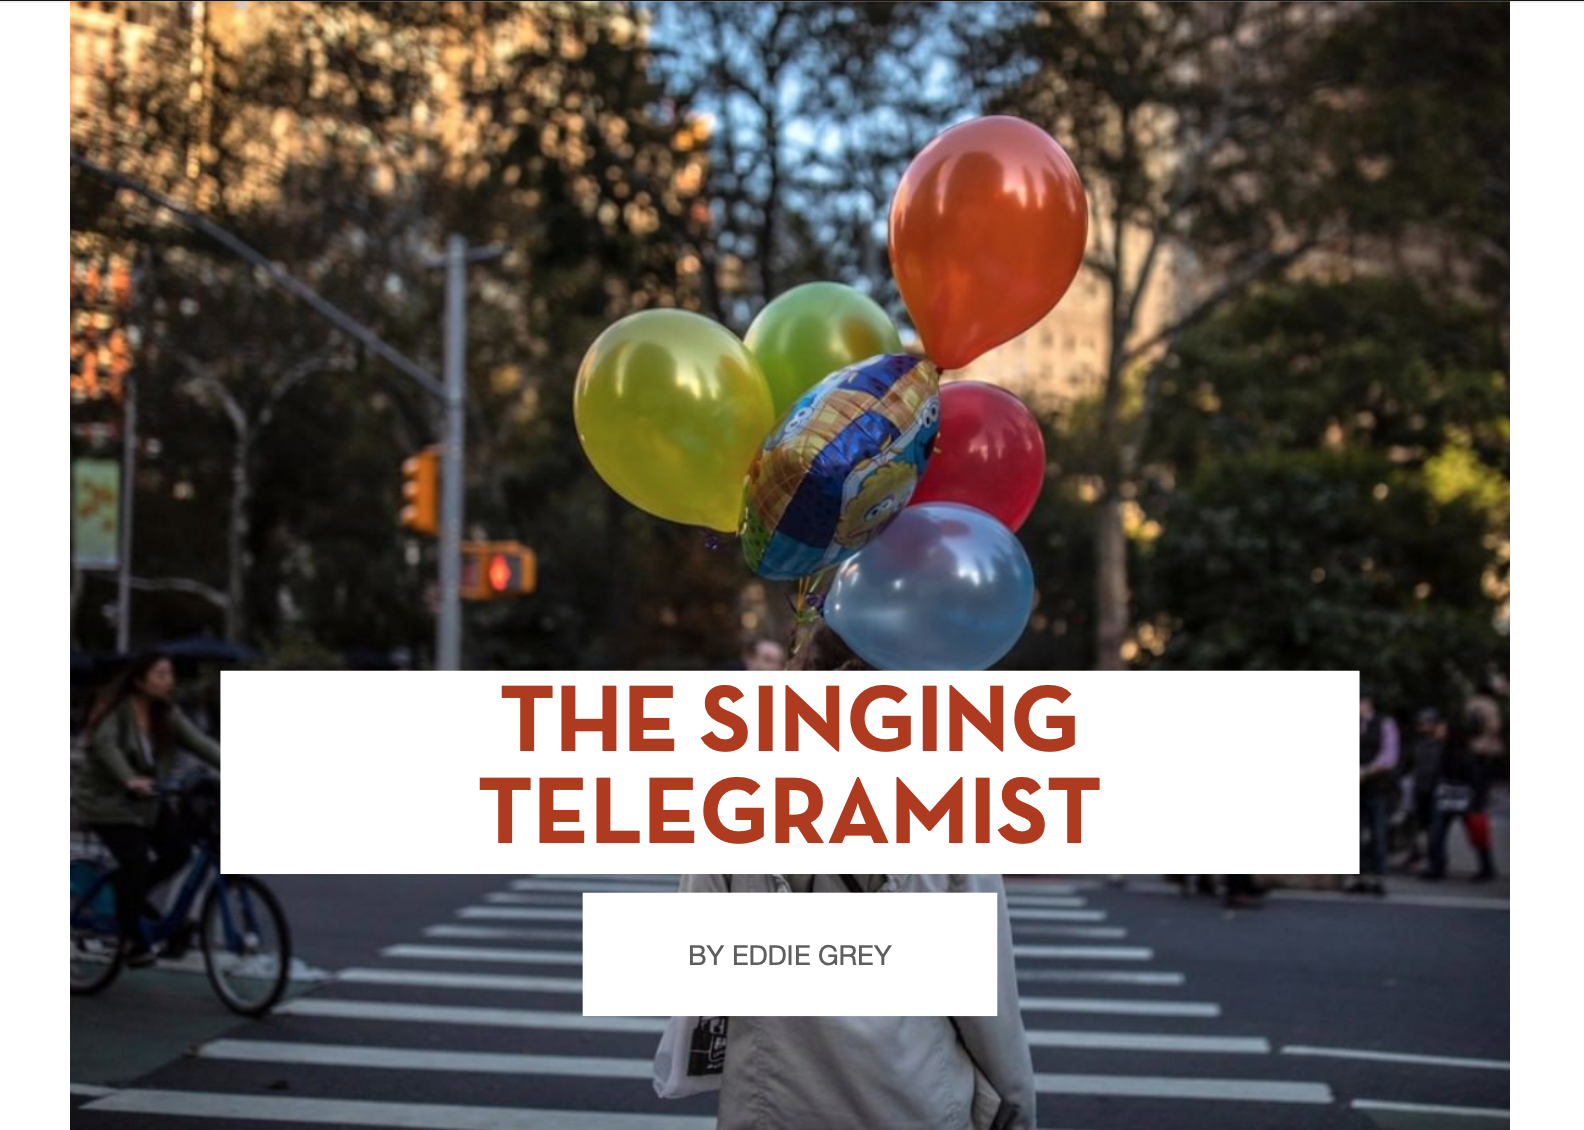 THE SINGING TELEGRAMIST